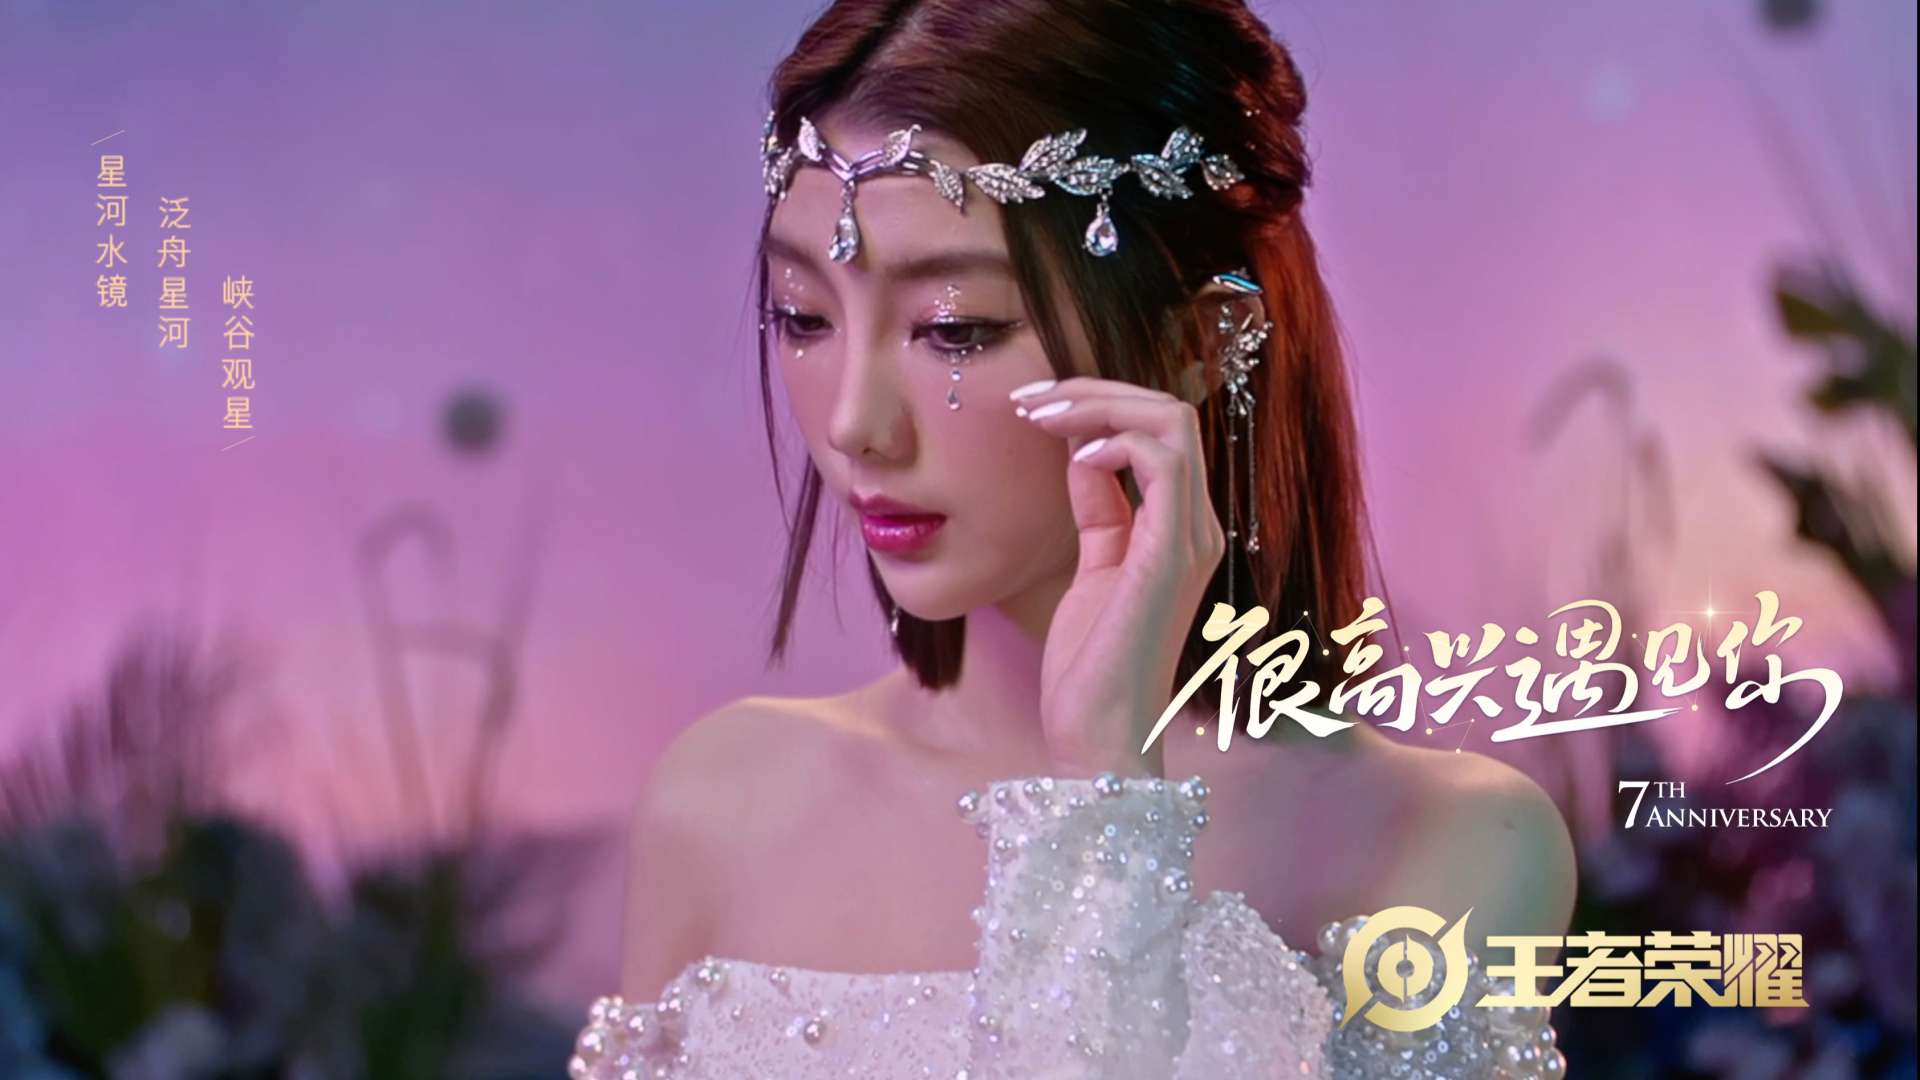 腾讯游戏“王者荣耀7周年”明星预热视频「很高兴遇见你」_Dir cut